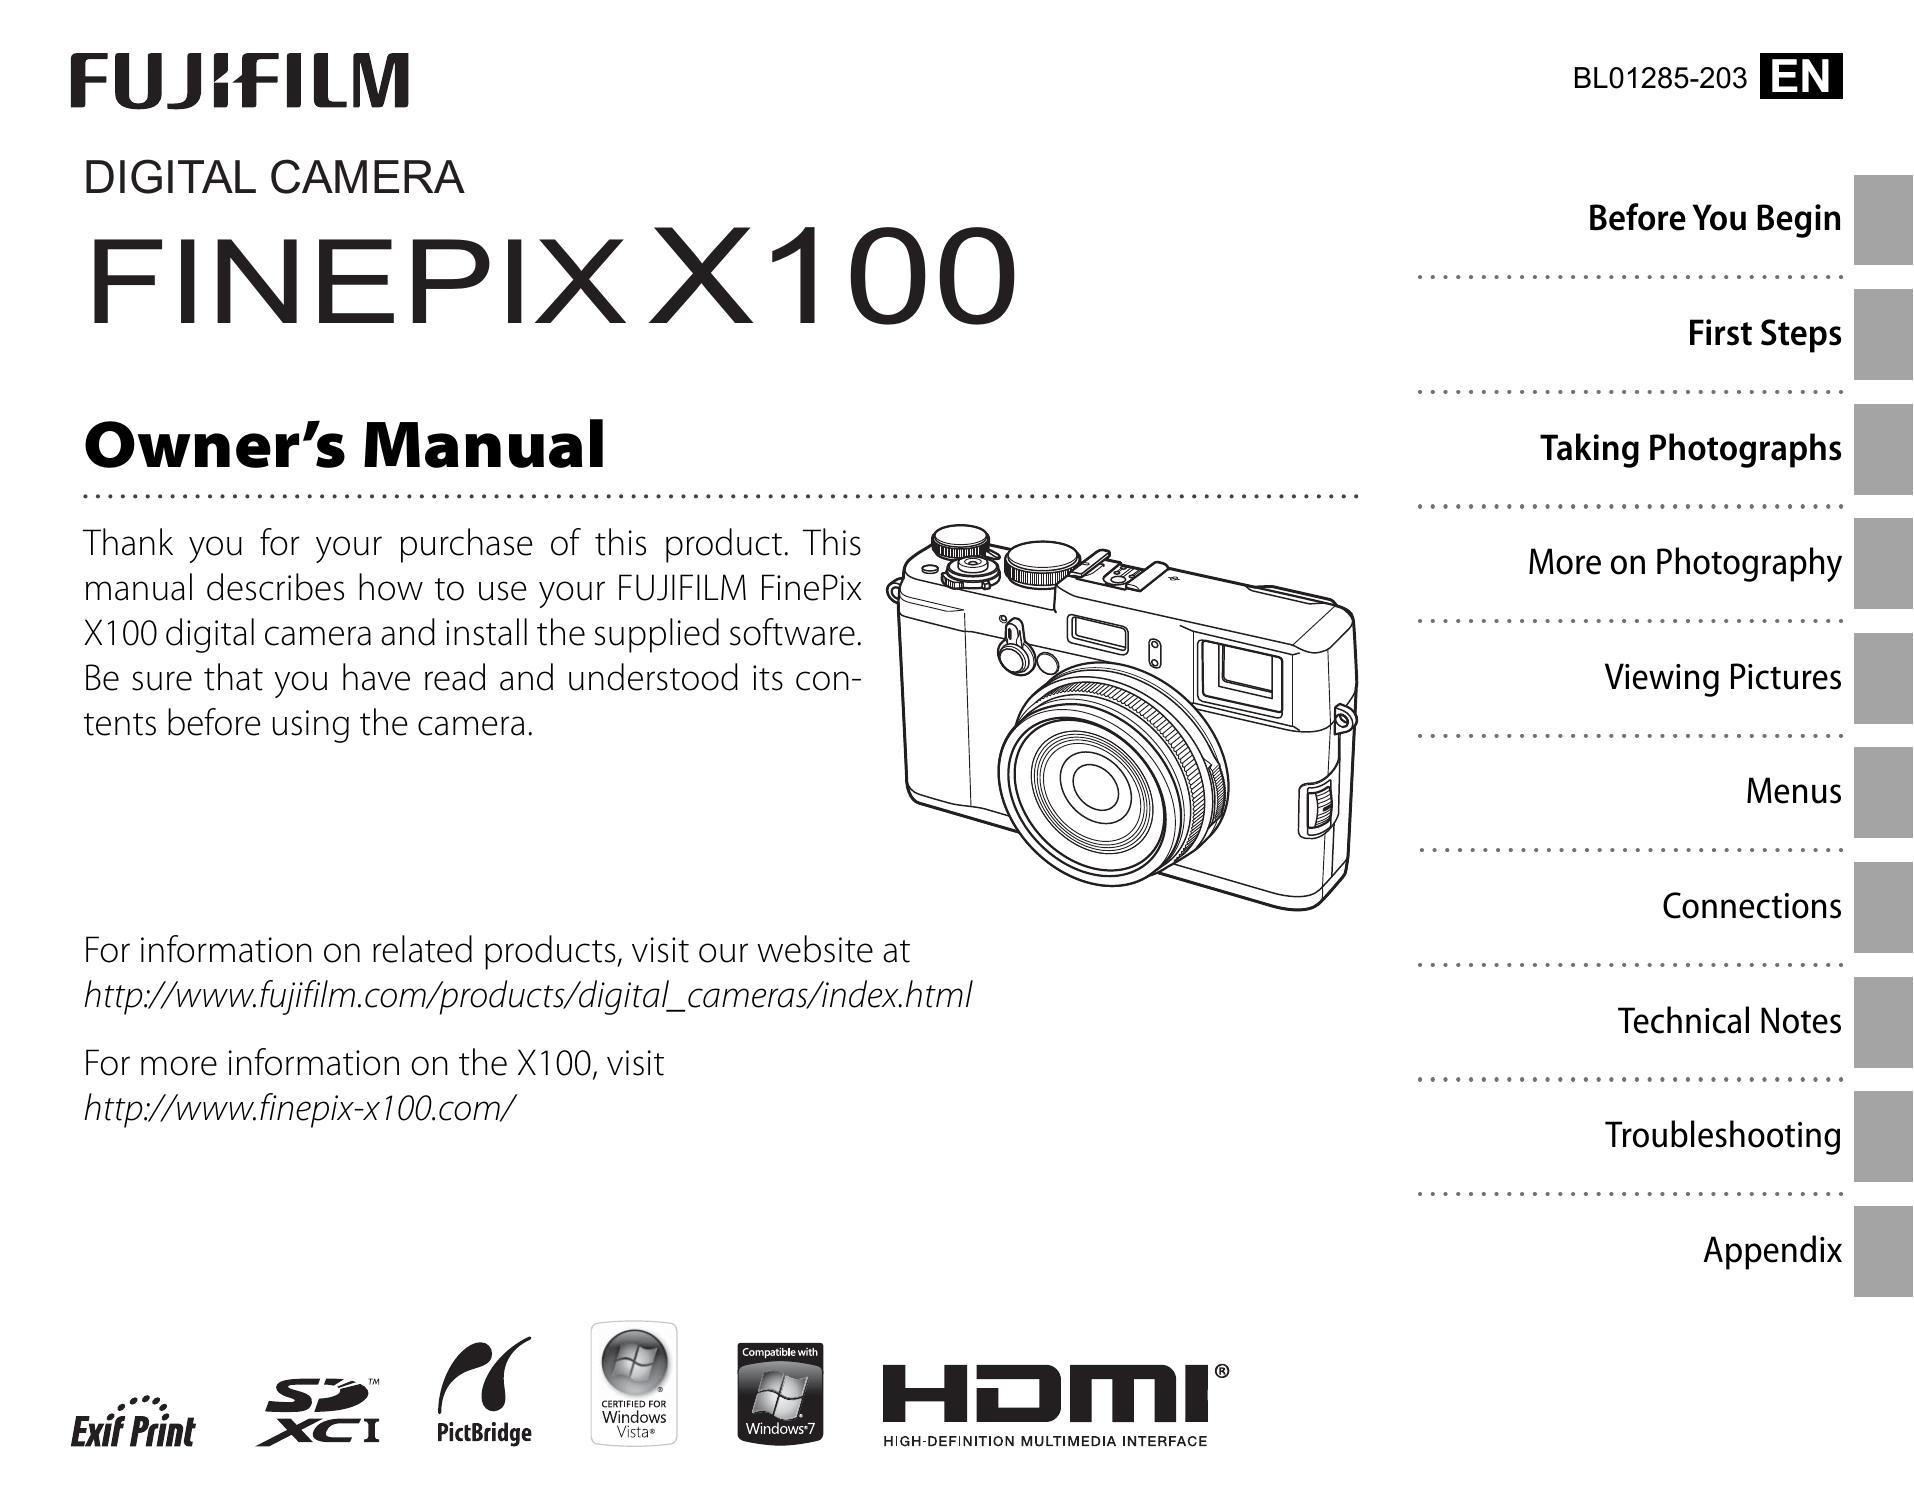 FujiFilm digital camera Camcorder User Manual